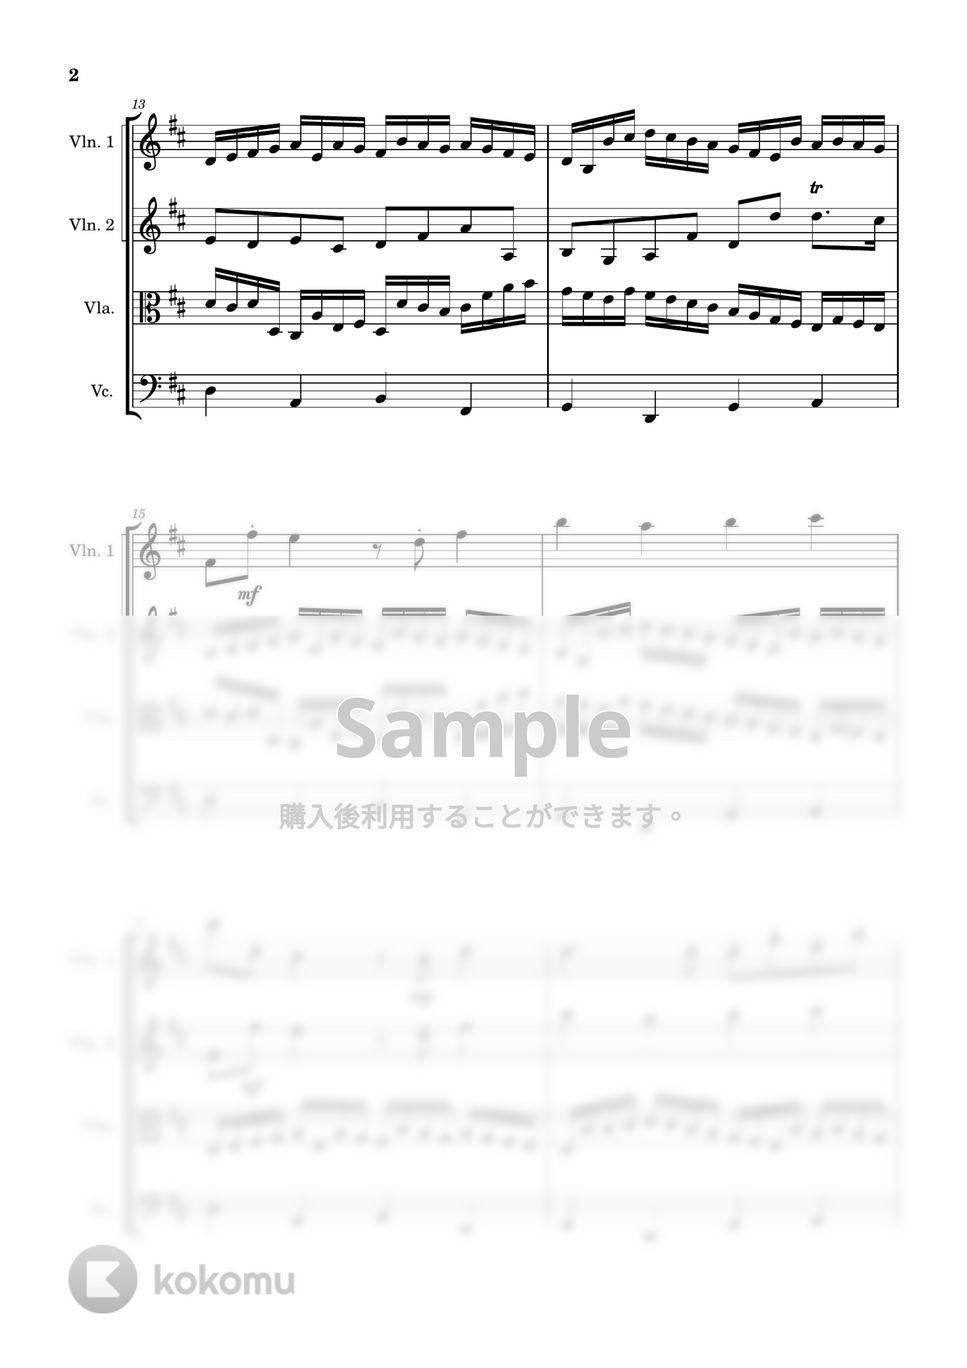 パッハルベル - カノン (弦楽四重奏) by Cellotto